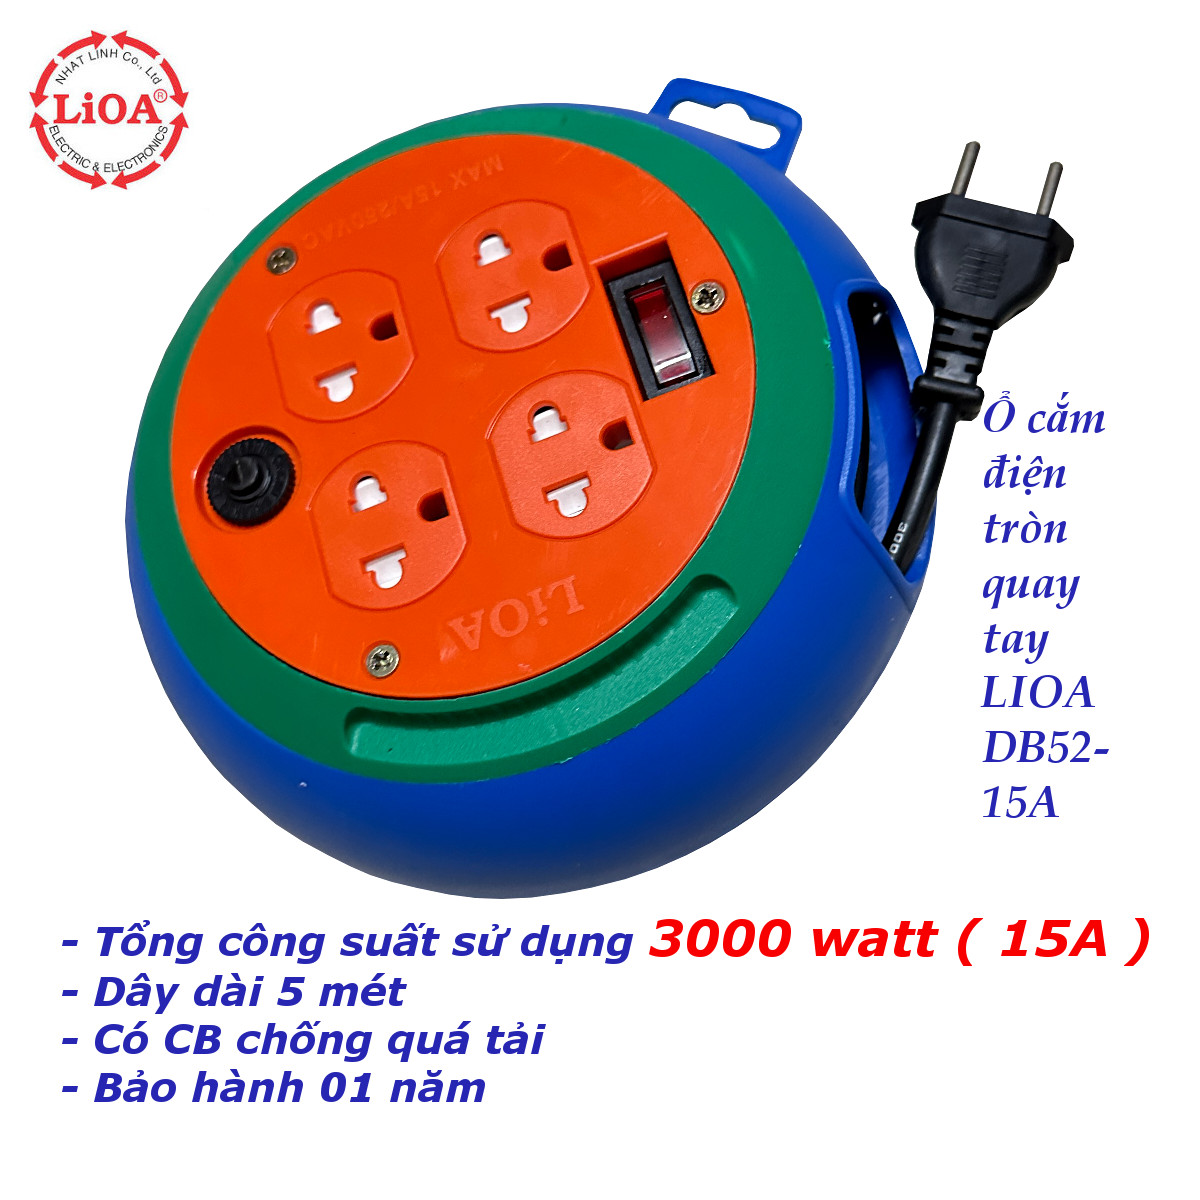 Ổ cắm điện LIOA kiểu tròn quay tay công suất cao 3300 watt DB52-15A dây dài 5 mét 4 lỗ 3 chấu